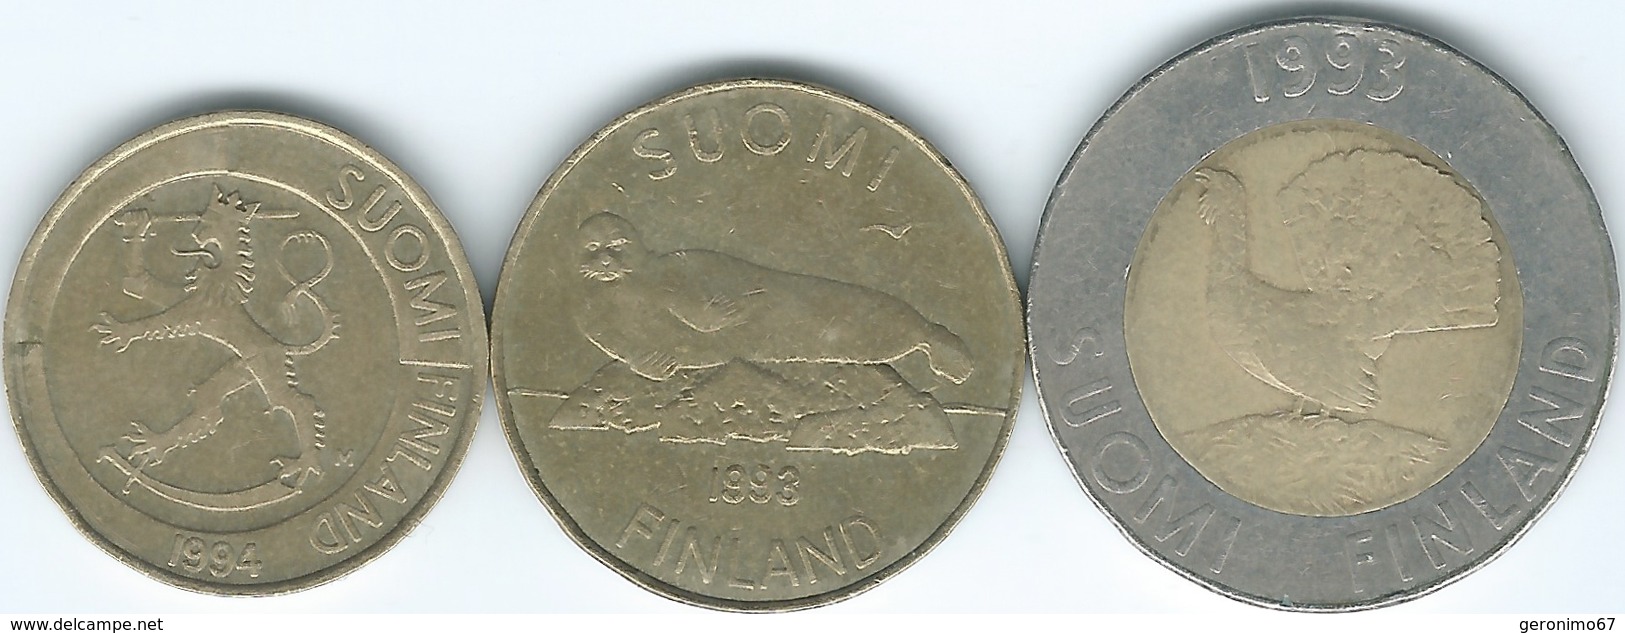 Finland - 1 Markka - 1994 (KM76) 5 Markkaa - 1993 (KM73) & 10 Markkaa - 1993 (KM77) - Finland